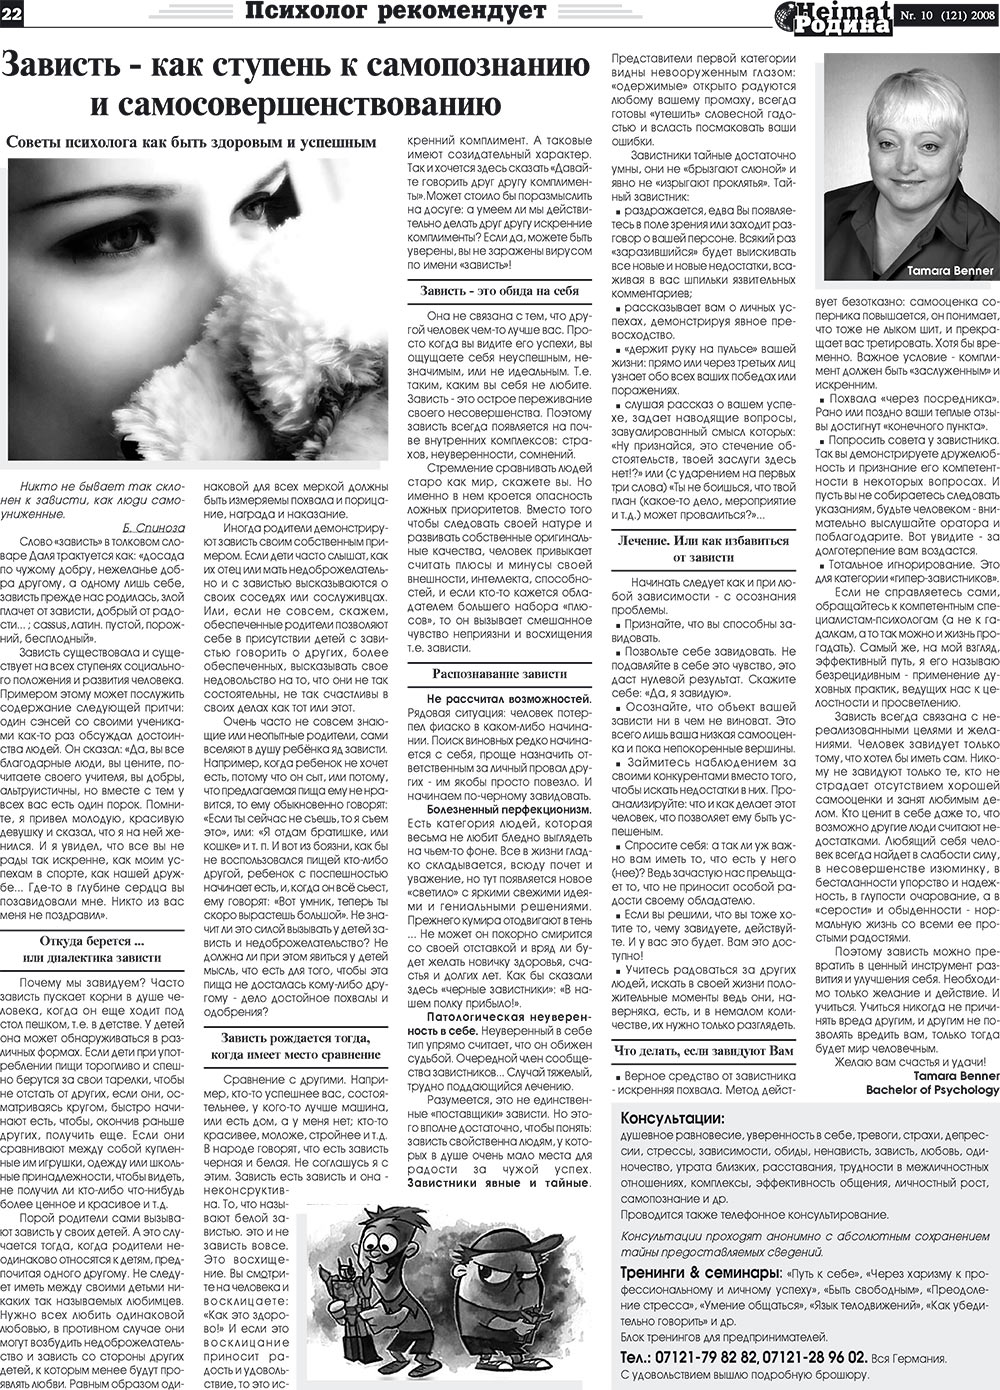 Heimat-Родина (газета). 2008 год, номер 10, стр. 22